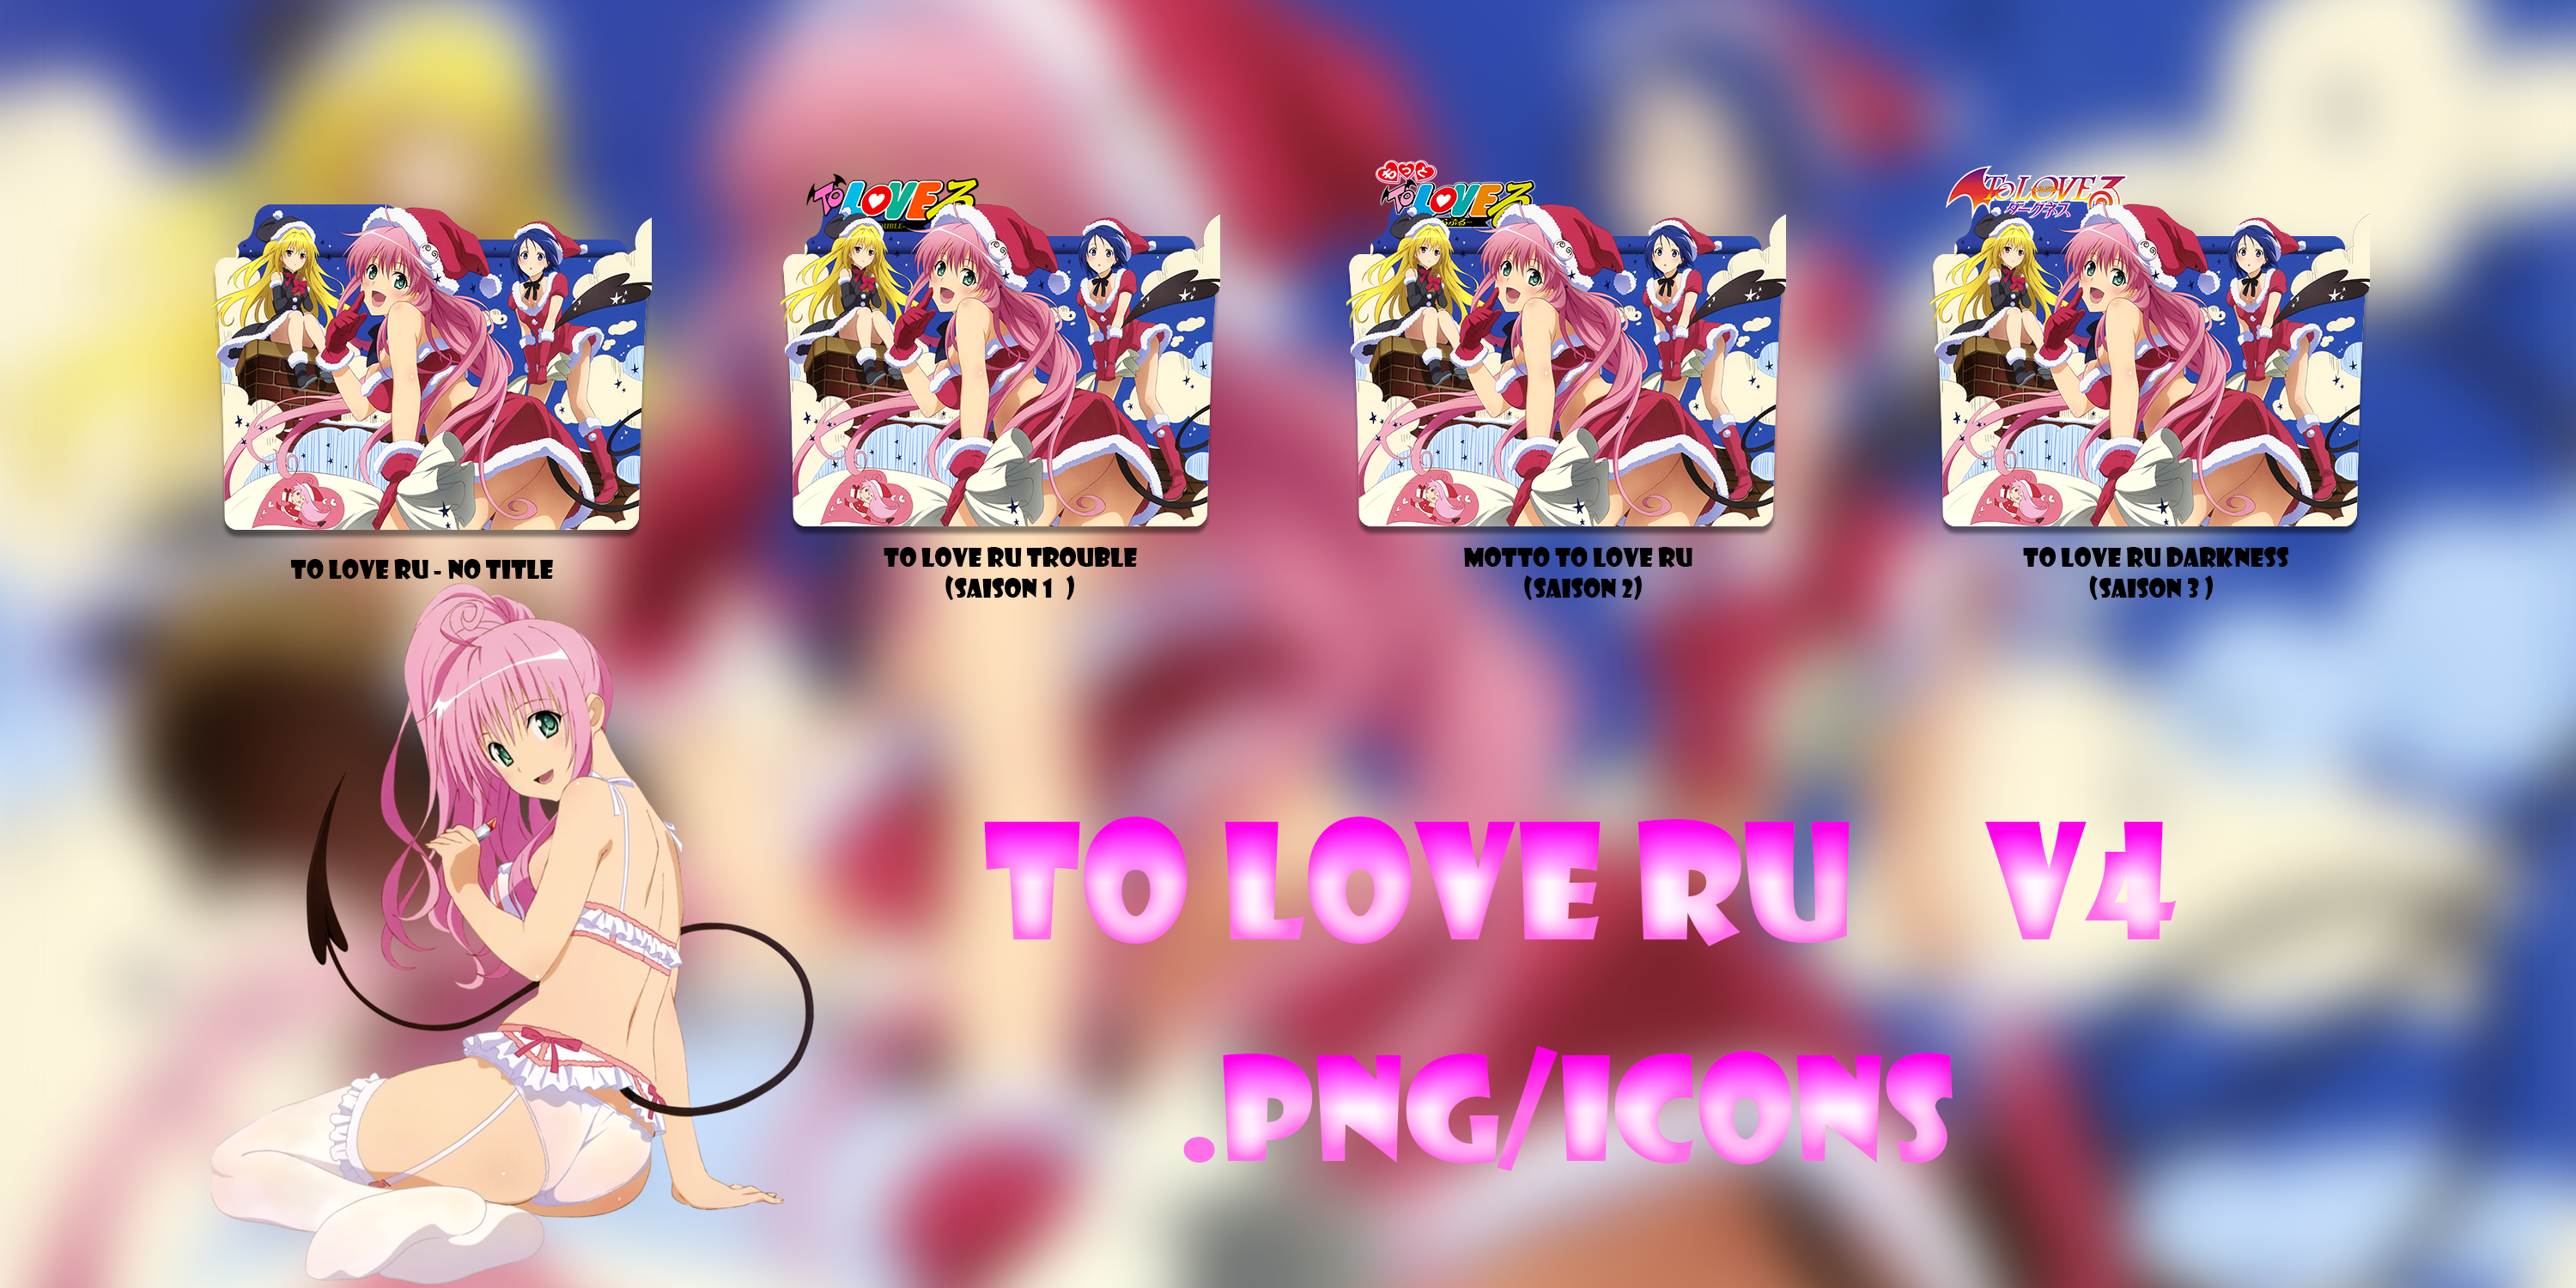 Version 1 - To Love Ru (3 Season) by alex-064 on DeviantArt